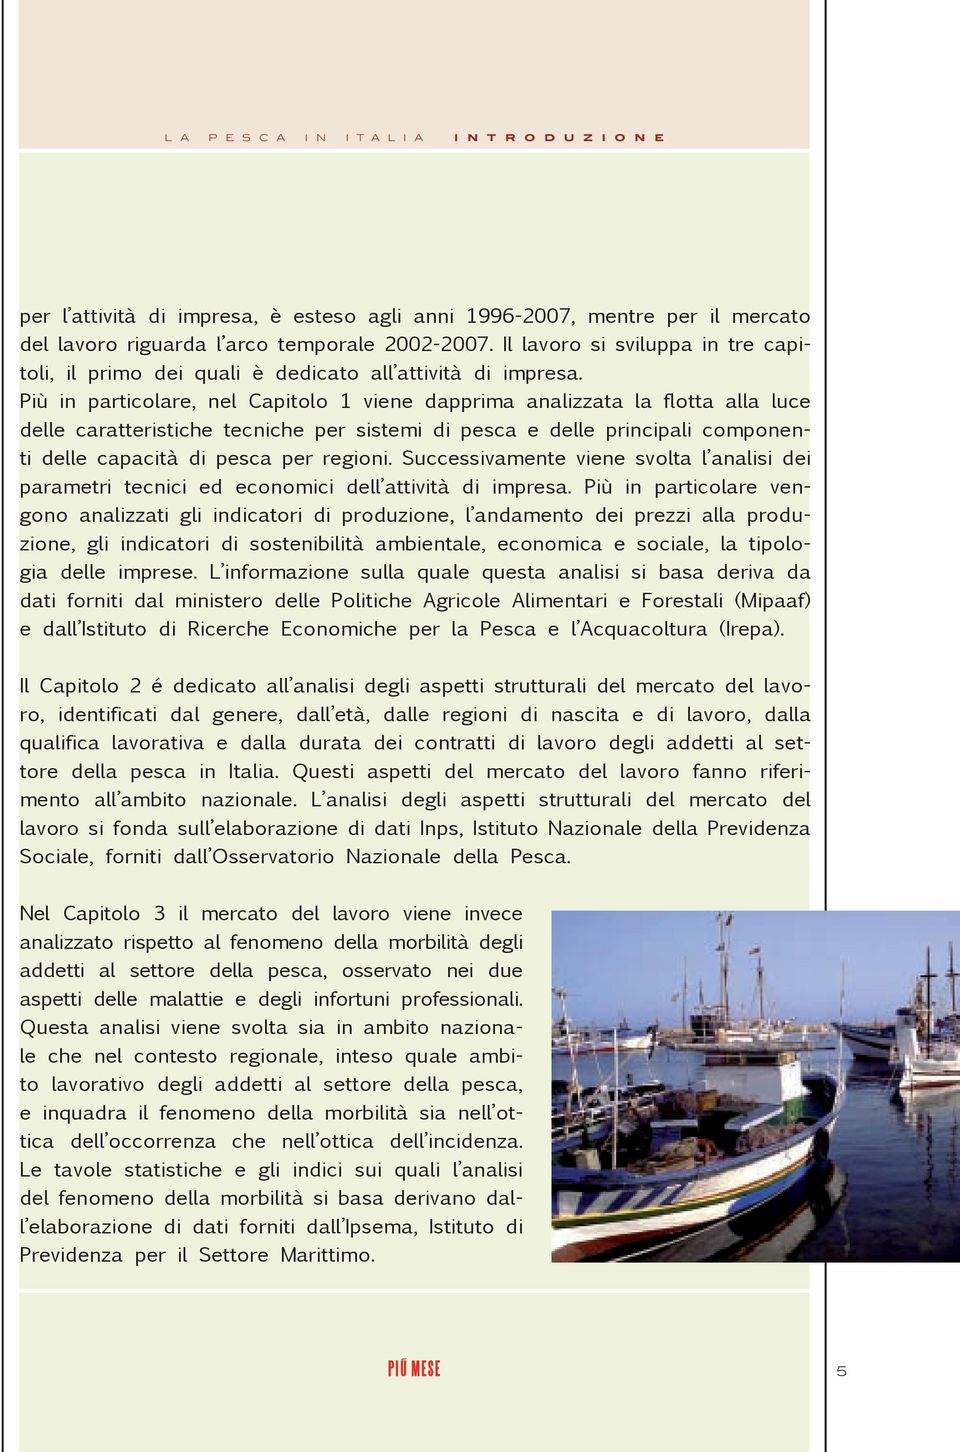 Più in particolare, nel Capitolo 1 viene dapprima analizzata la flotta alla luce delle caratteristiche tecniche per sistemi di pesca e delle principali componenti delle capacità di pesca per regioni.